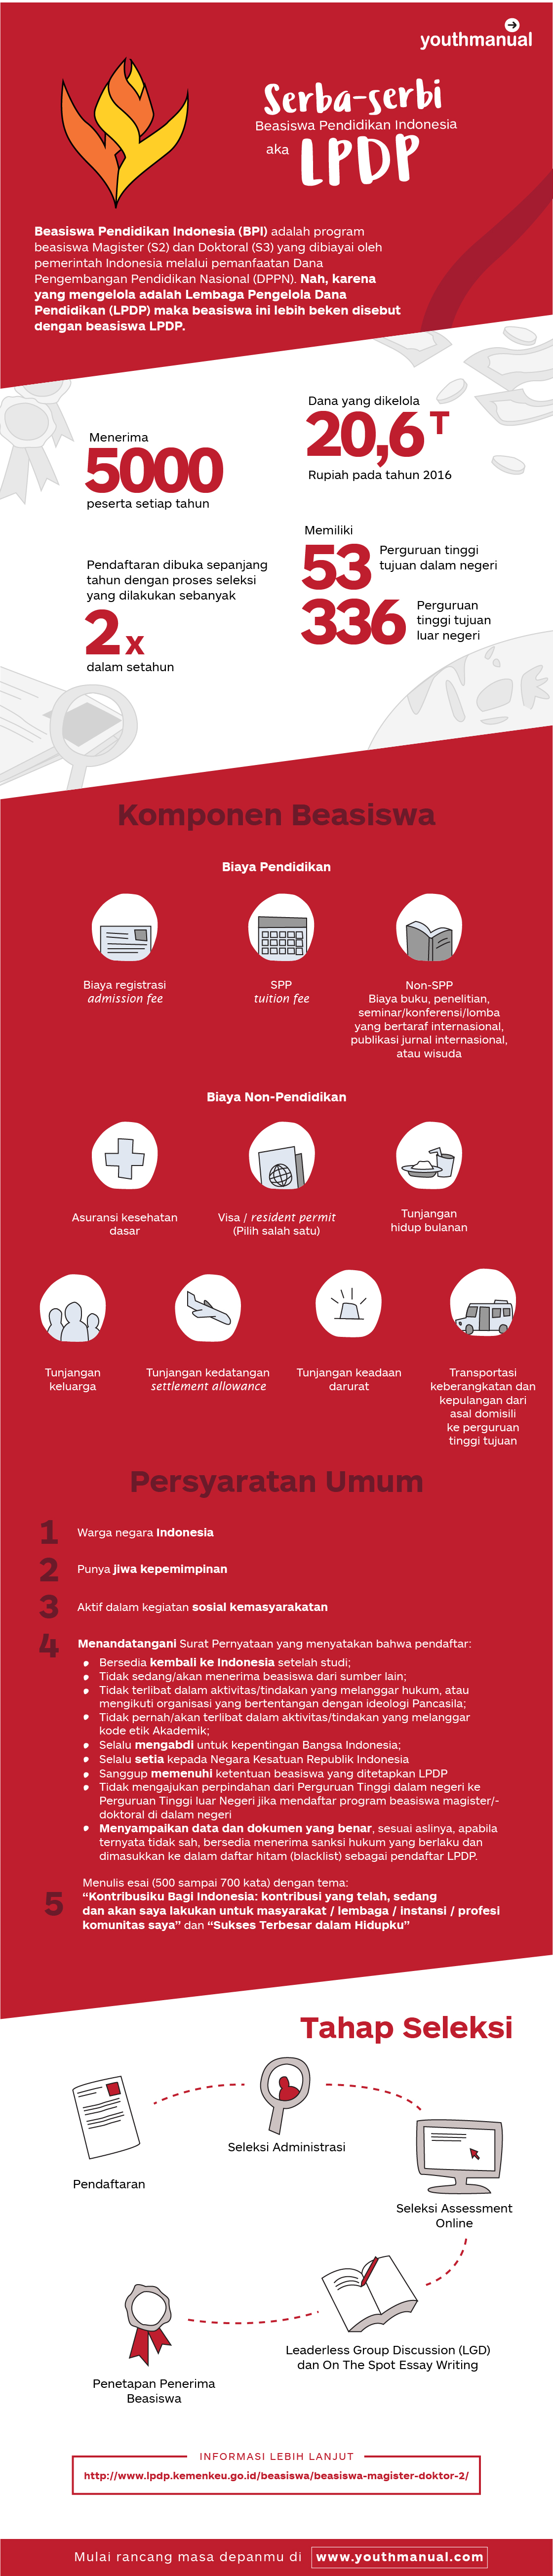 info beasiswa lpdp (beasiswa pendidikan indonesia)